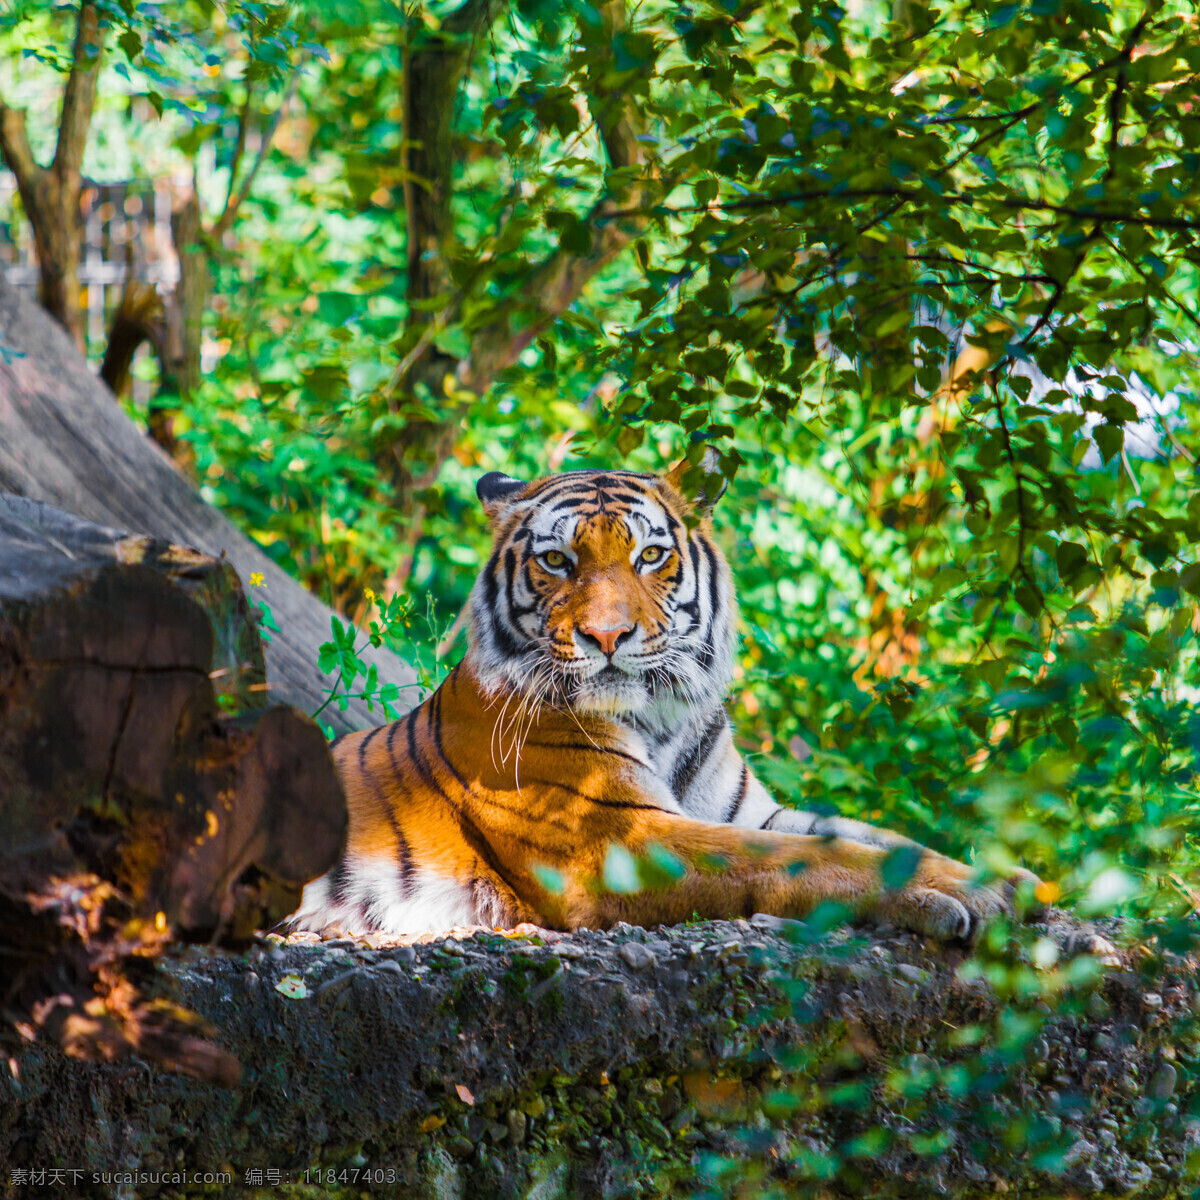 凶猛 老虎 动物 高清 公园 百兽之王 陆地动物 野生动物 动物世界 动物摄影 动物图片 绿色